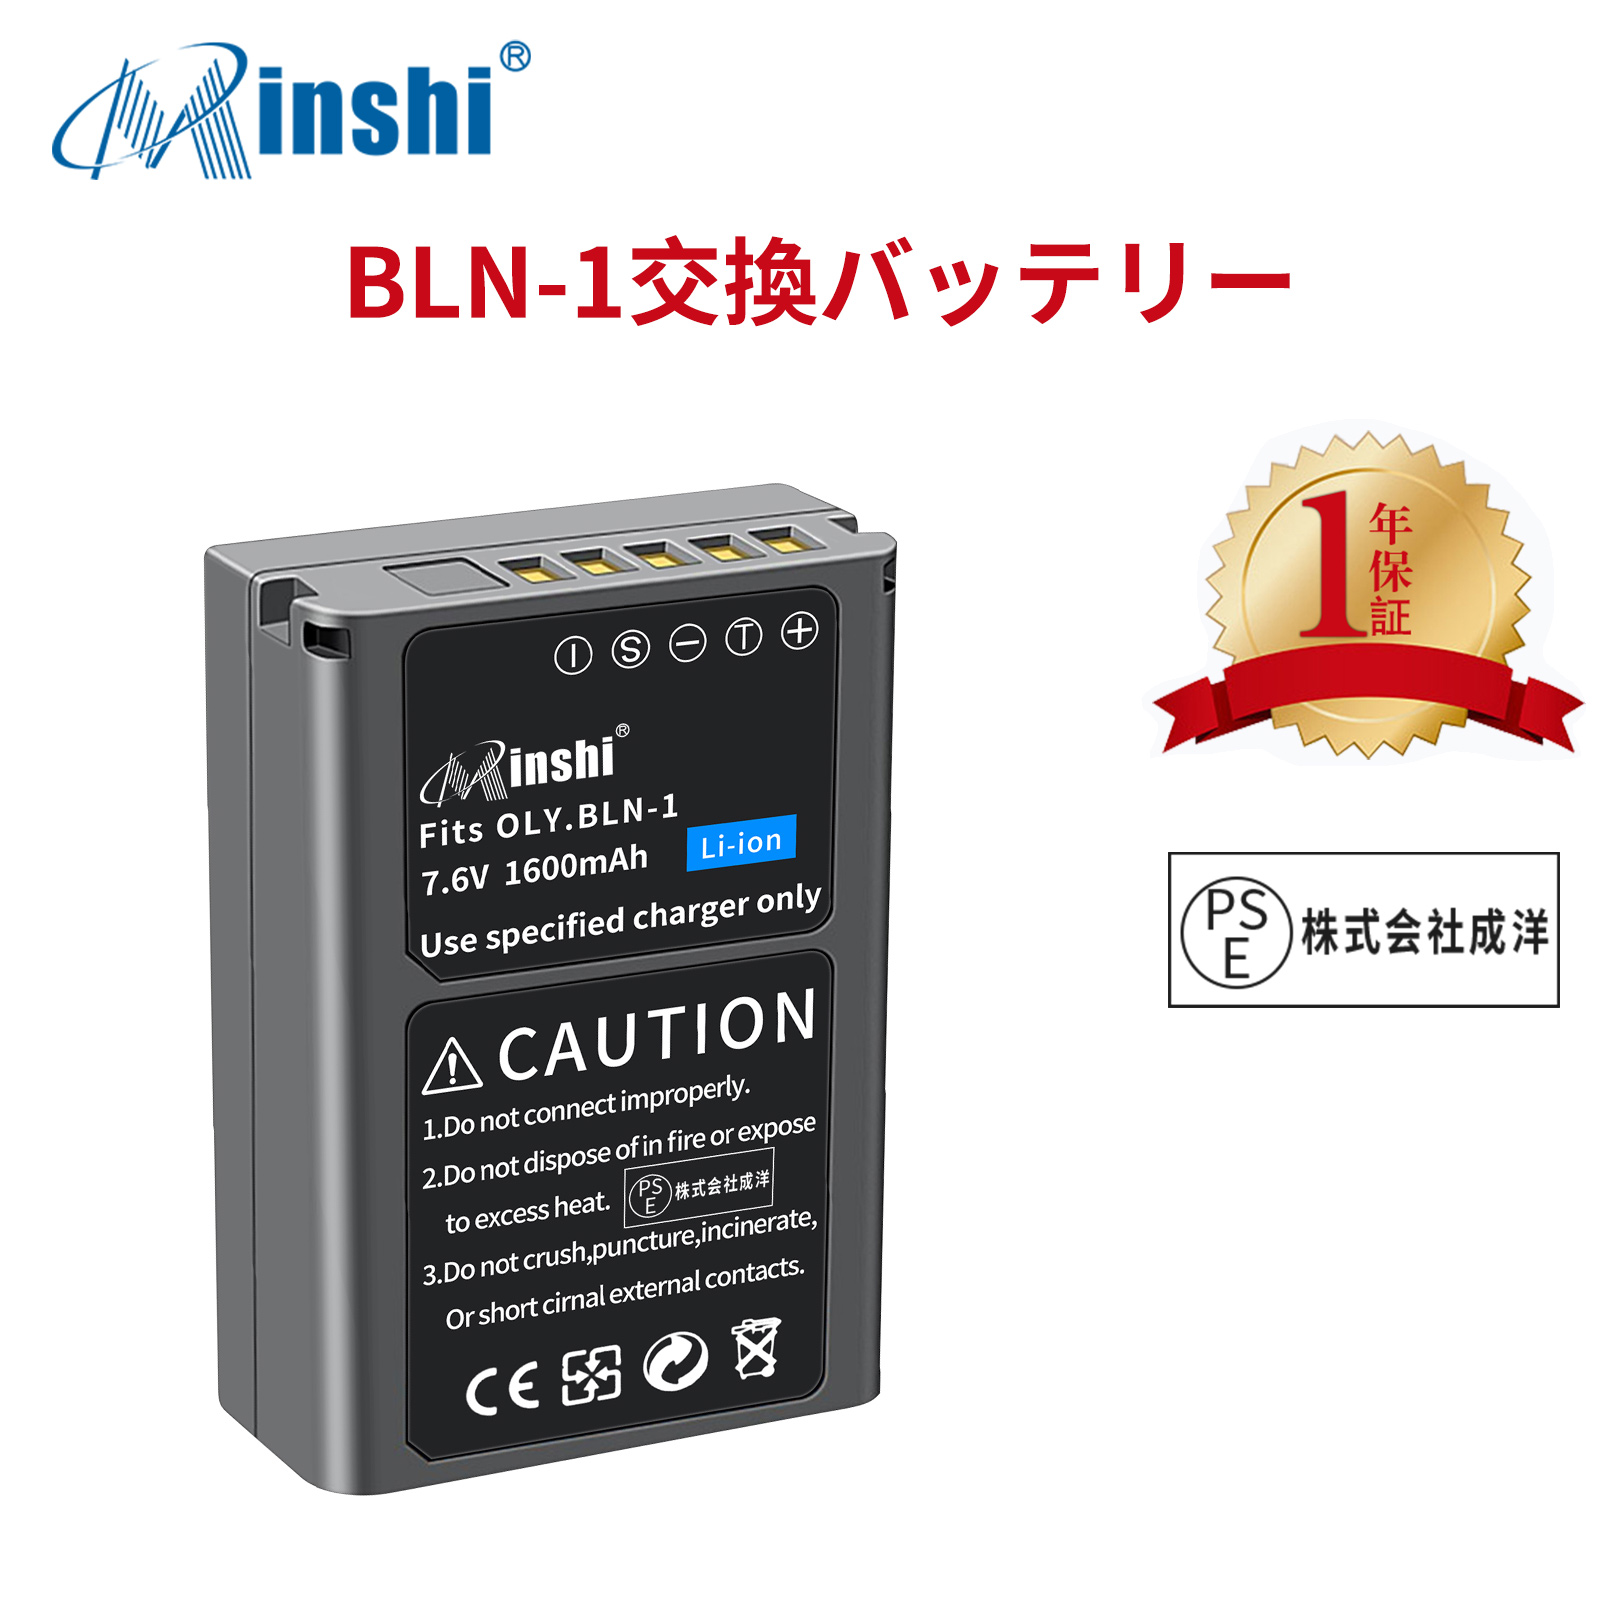 【1年保証】 minshi OLYMPUS PEN E-P5 E-M5対応 互換バッテリー 1600mAh 高品質 BLN-1 交換用バッテリー オリジナル充電器との互換性がない